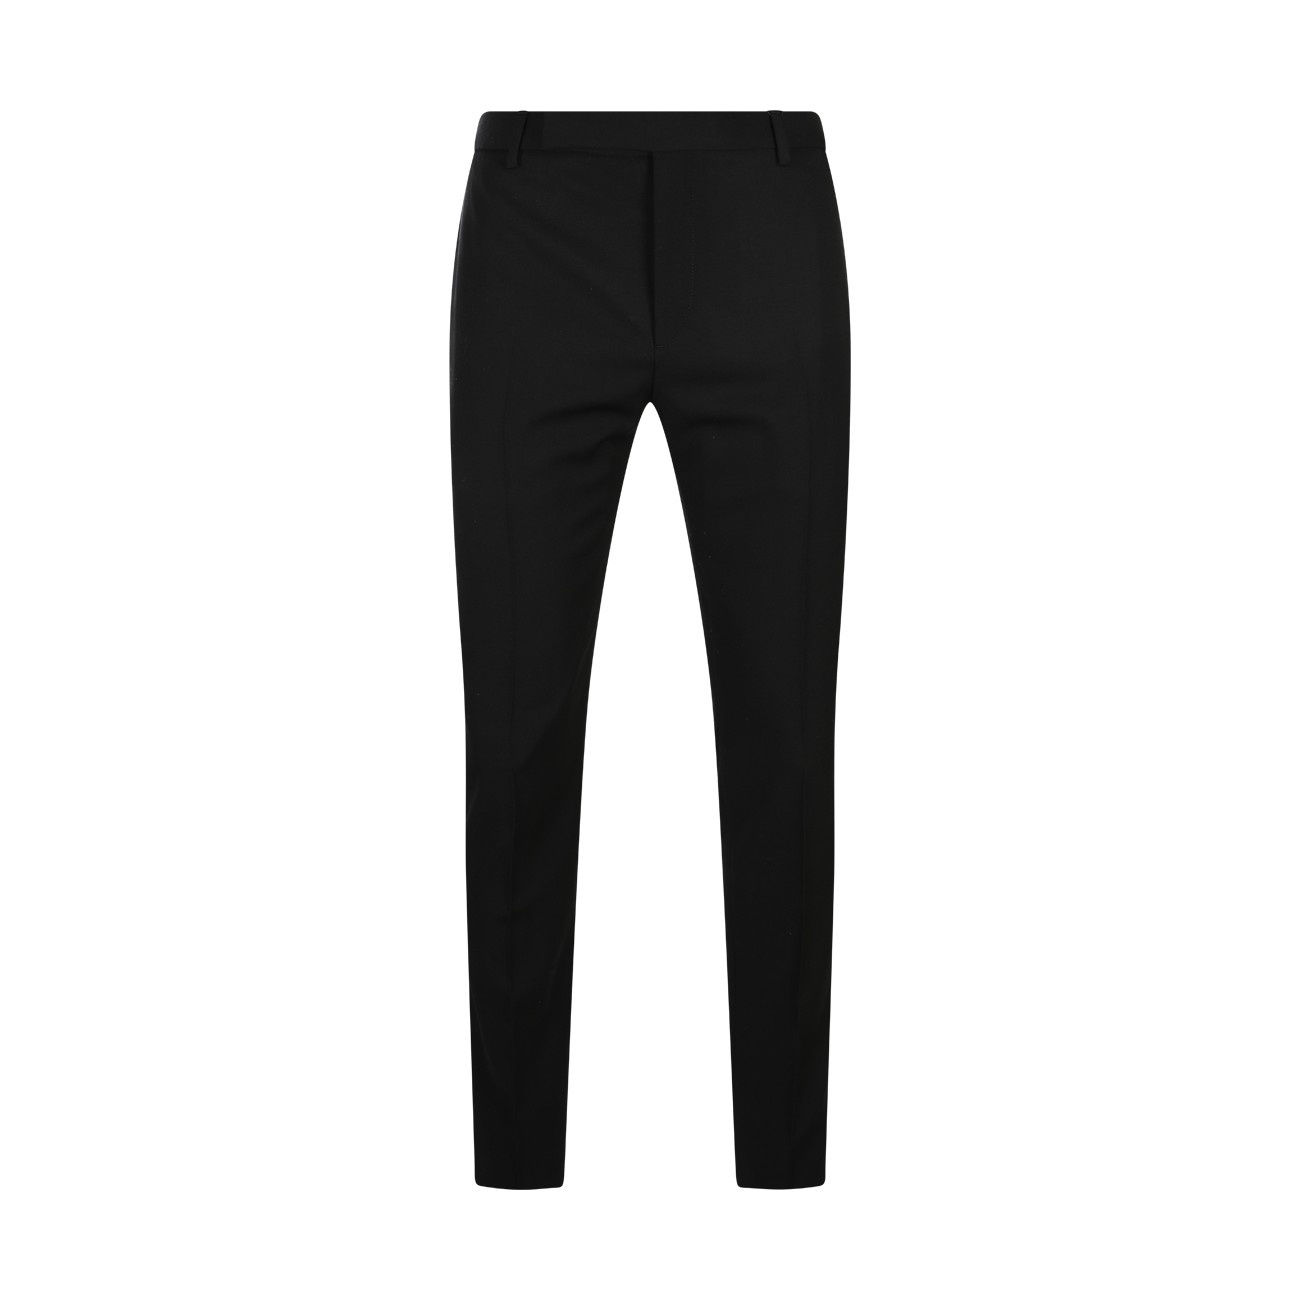 black wool pants - 1